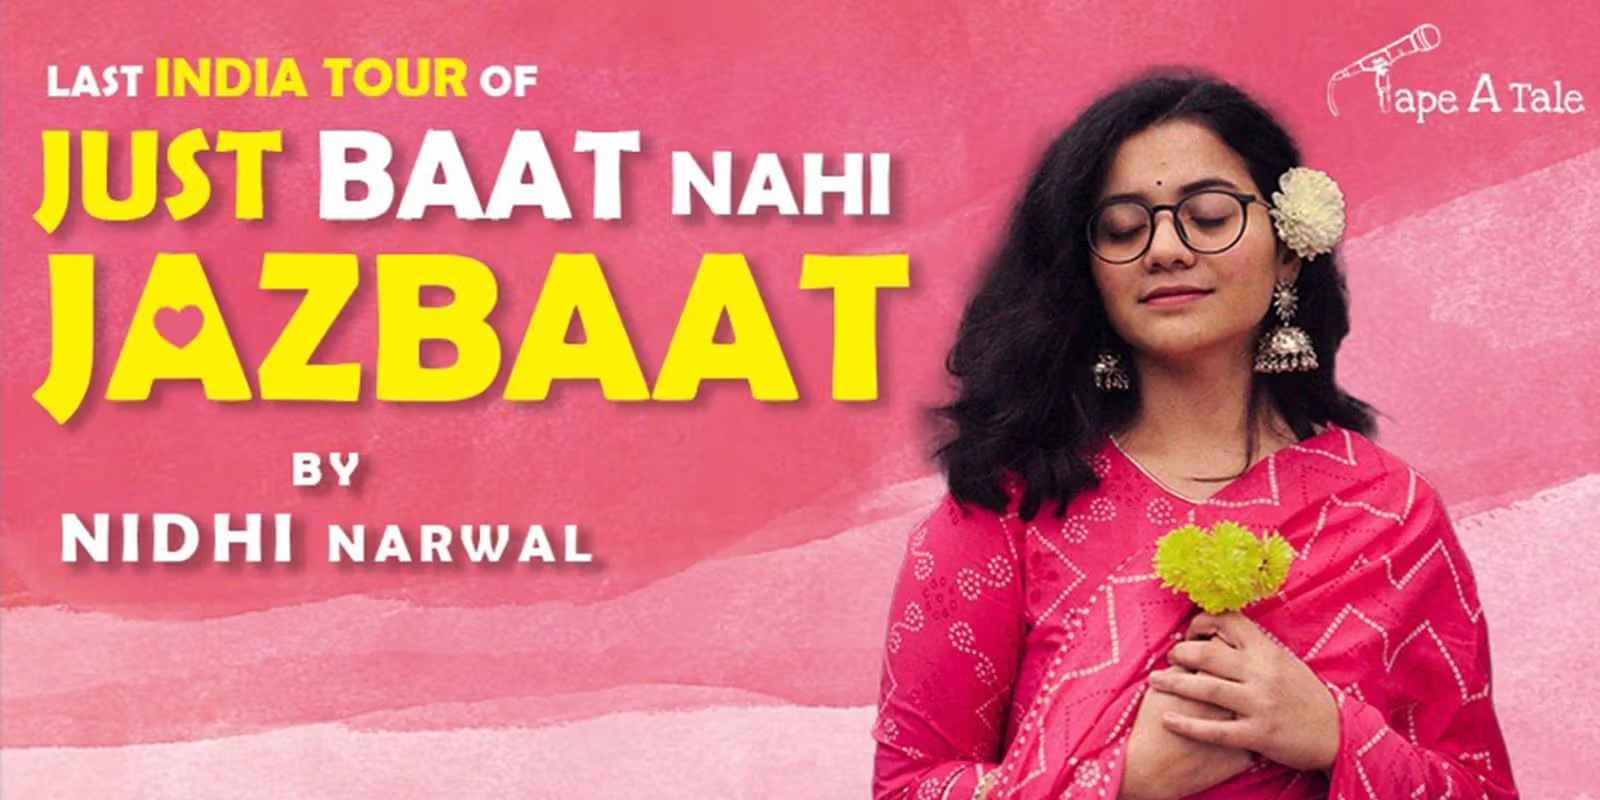 Just Baat Nhi Jazbaat – Nidhi Narwal